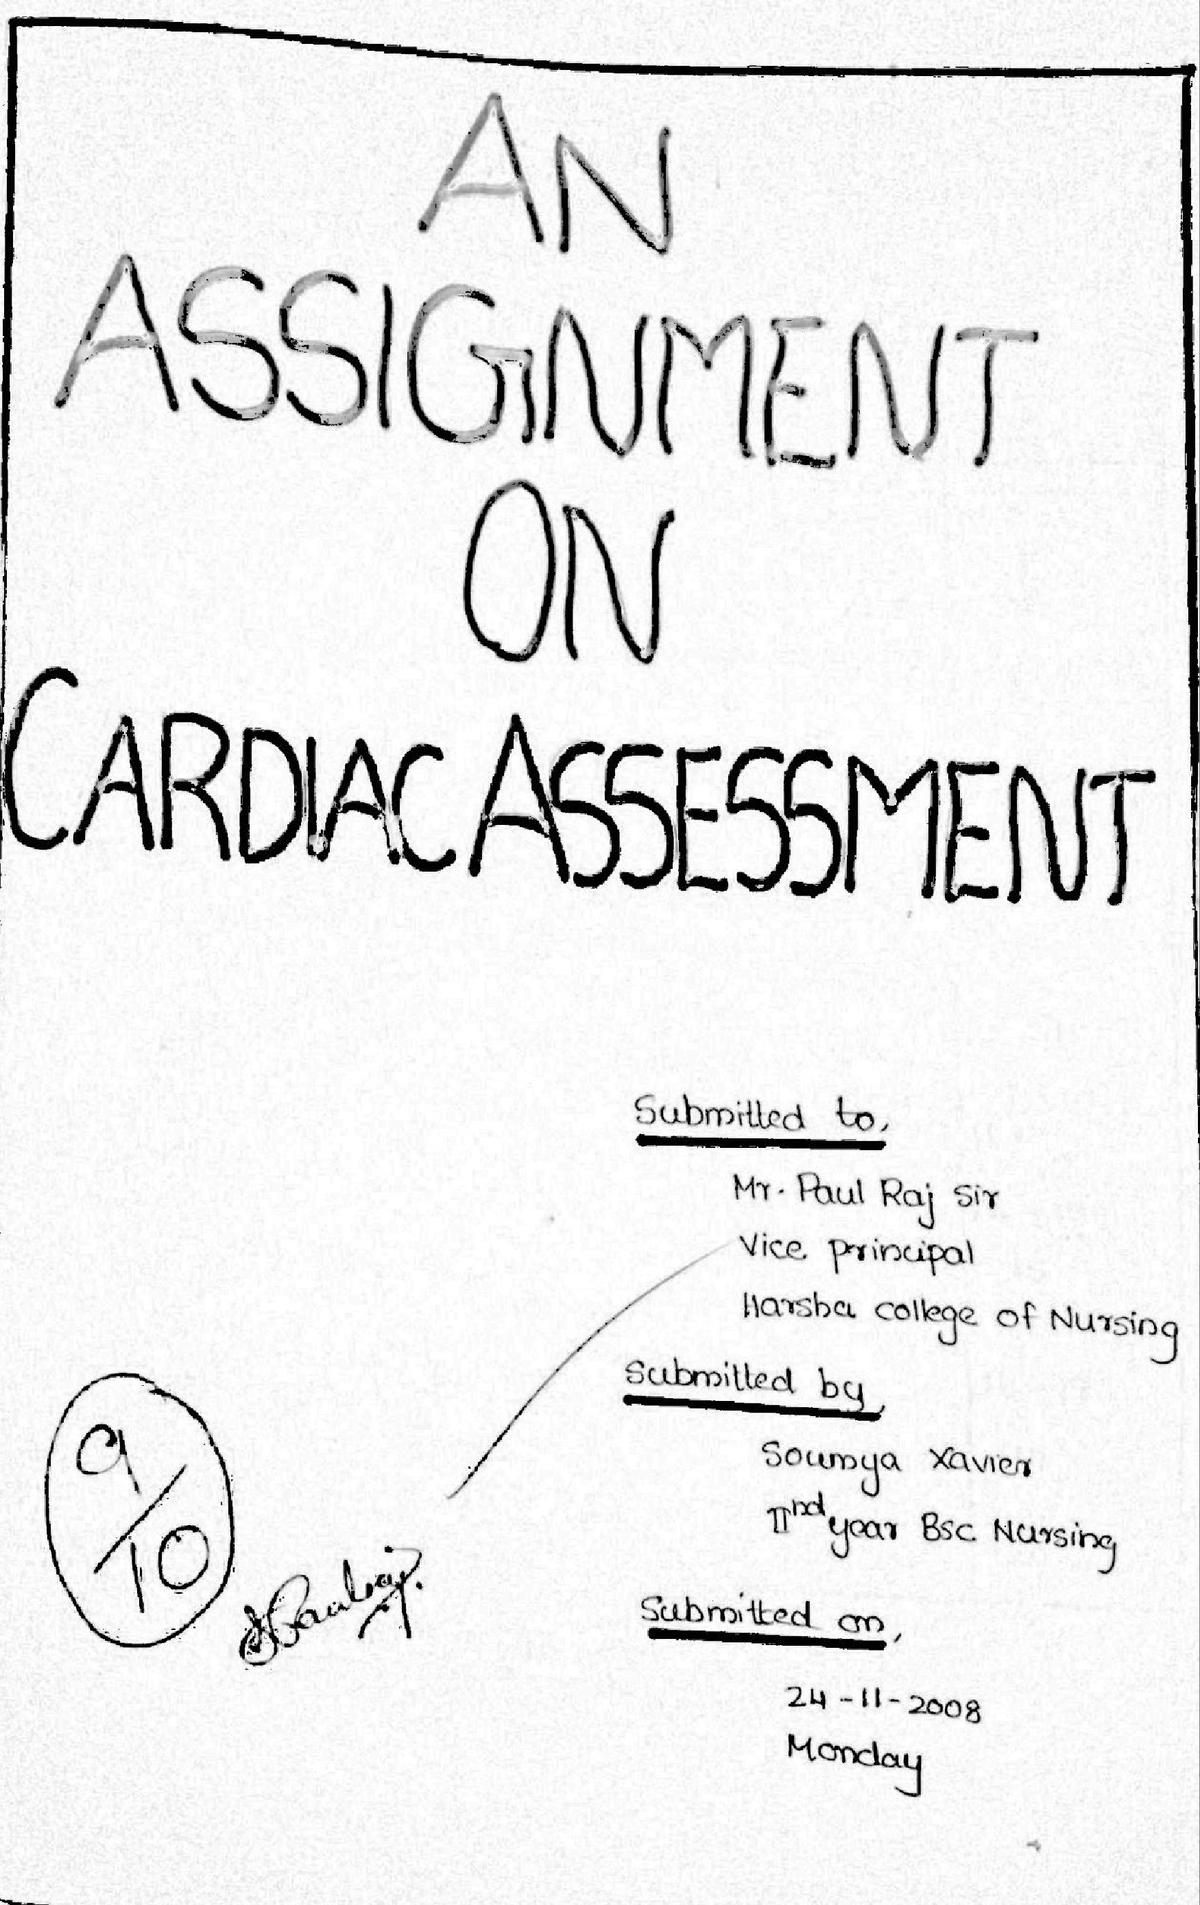 cardiac health care assignment